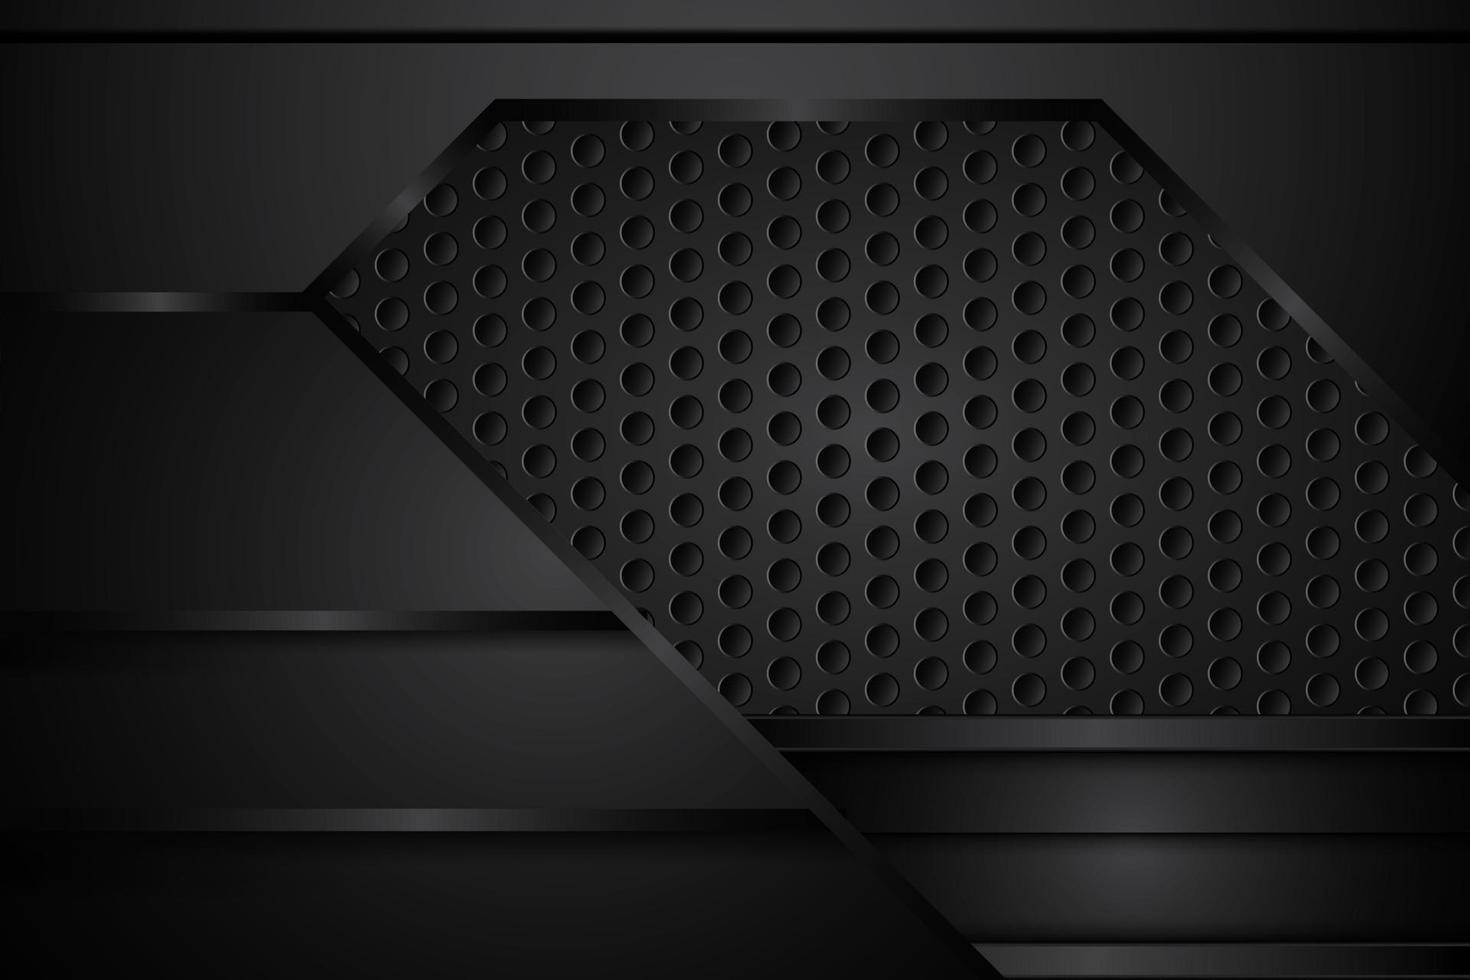 metallo astratto su struttura nera a rete dal design moderno su sfondo scuro. illustrazione vettoriale